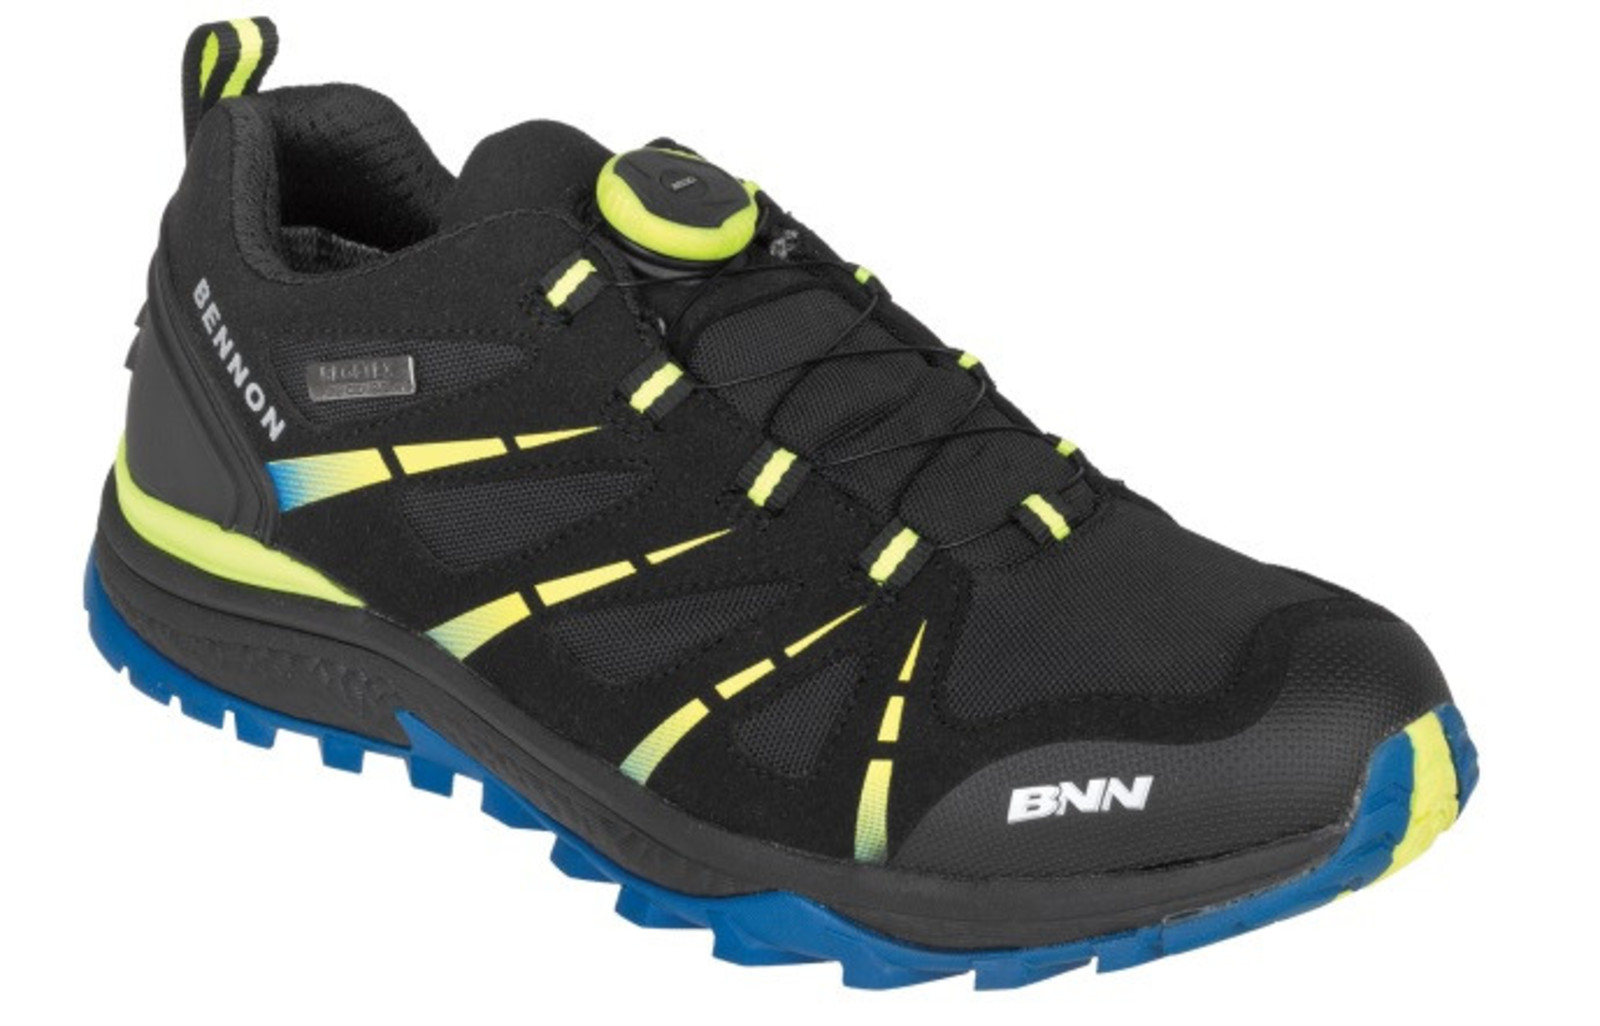 Voľnočasové topánky Bennon Sonix Atop - veľkosť: 37, farba: modrá/čierna